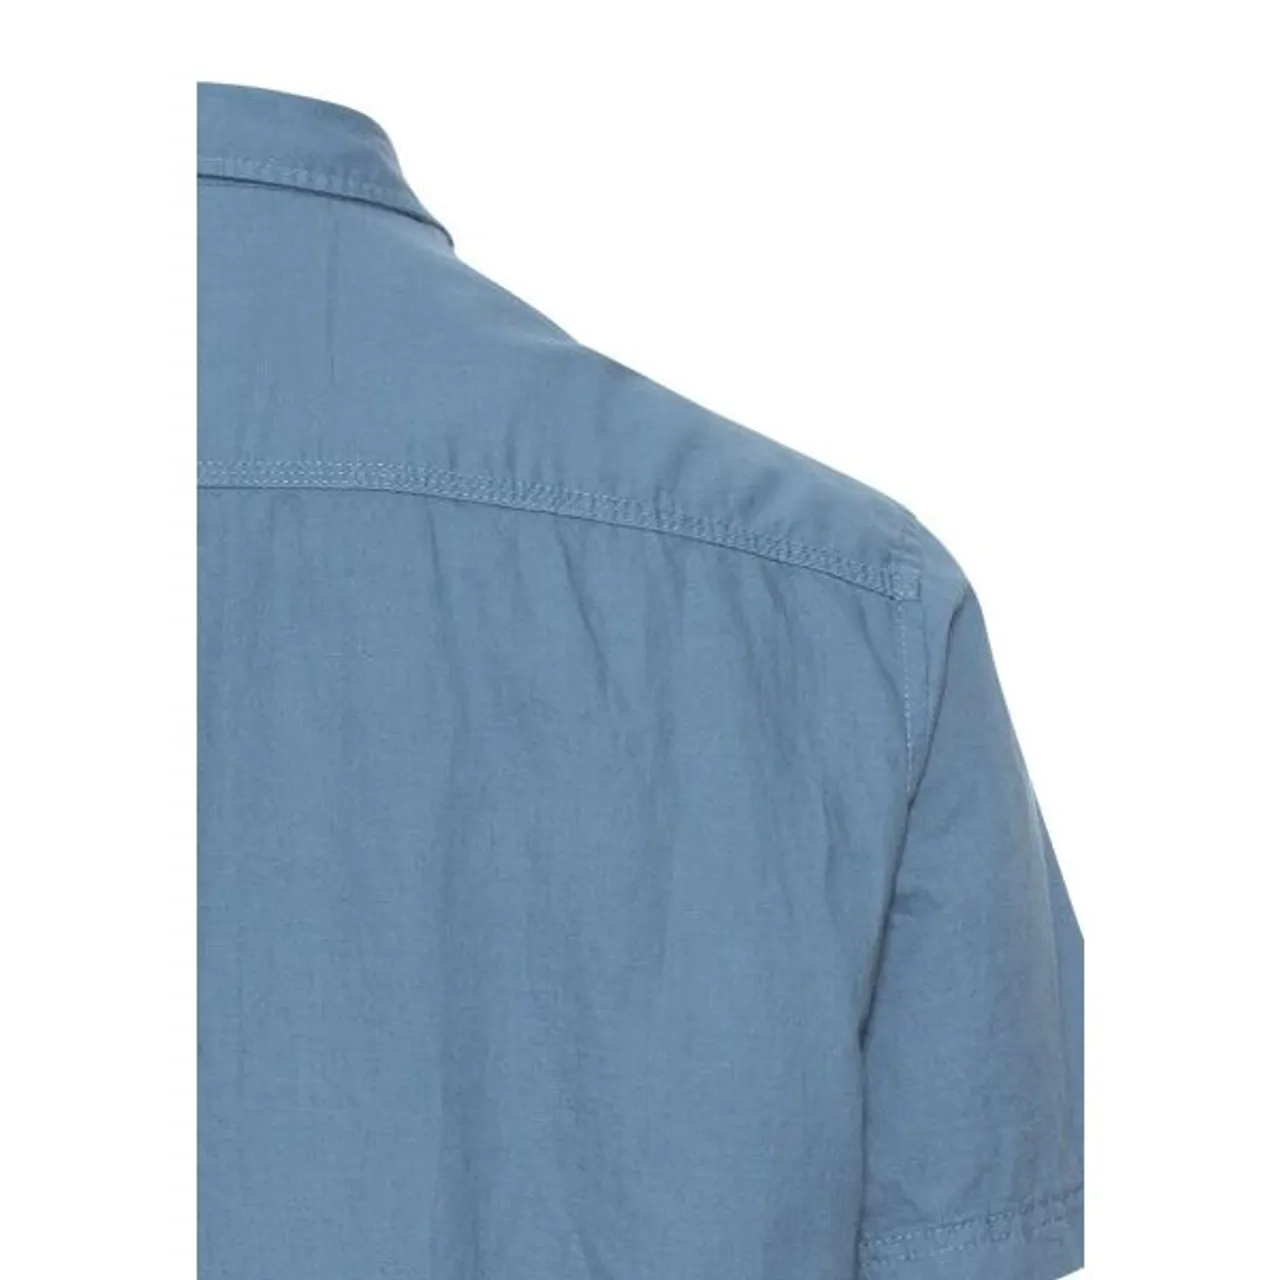 Kurzarmhemd CAMEL ACTIVE Gr. XXL, N-Gr, blau (elemental blue) Herren Hemden Kurzarm mit Brusttasche